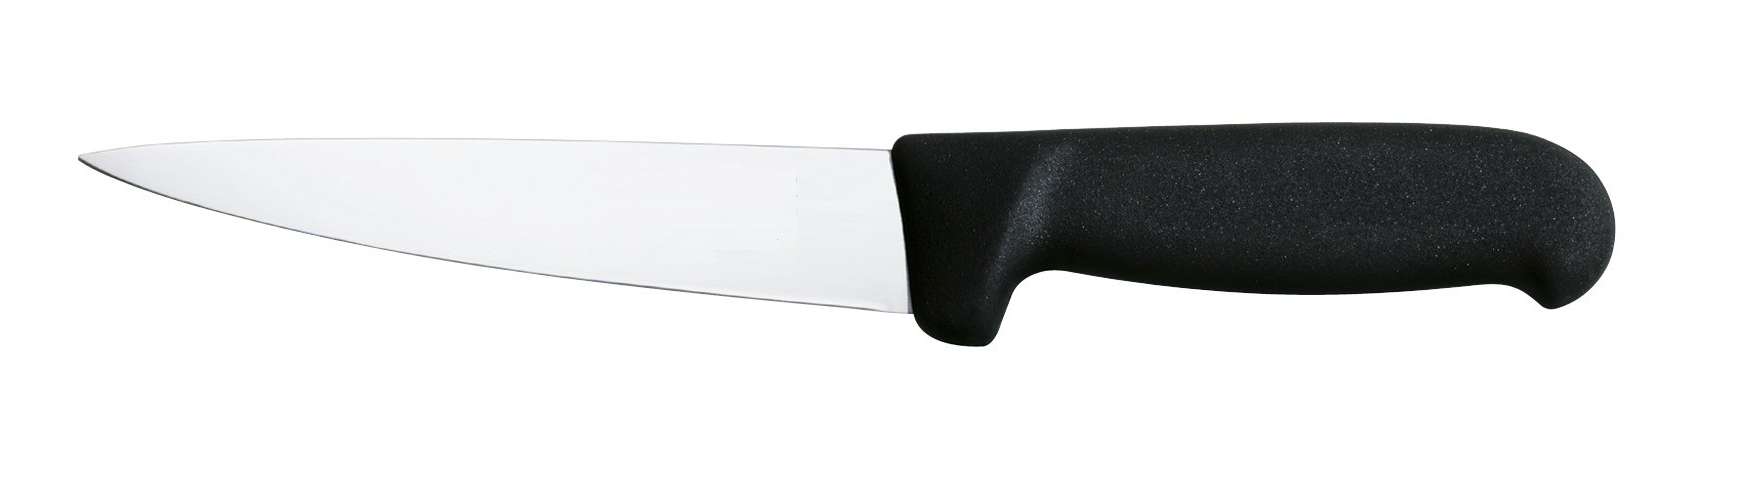 Couteau à saigner droit Loubeln 18 cm rigide noir